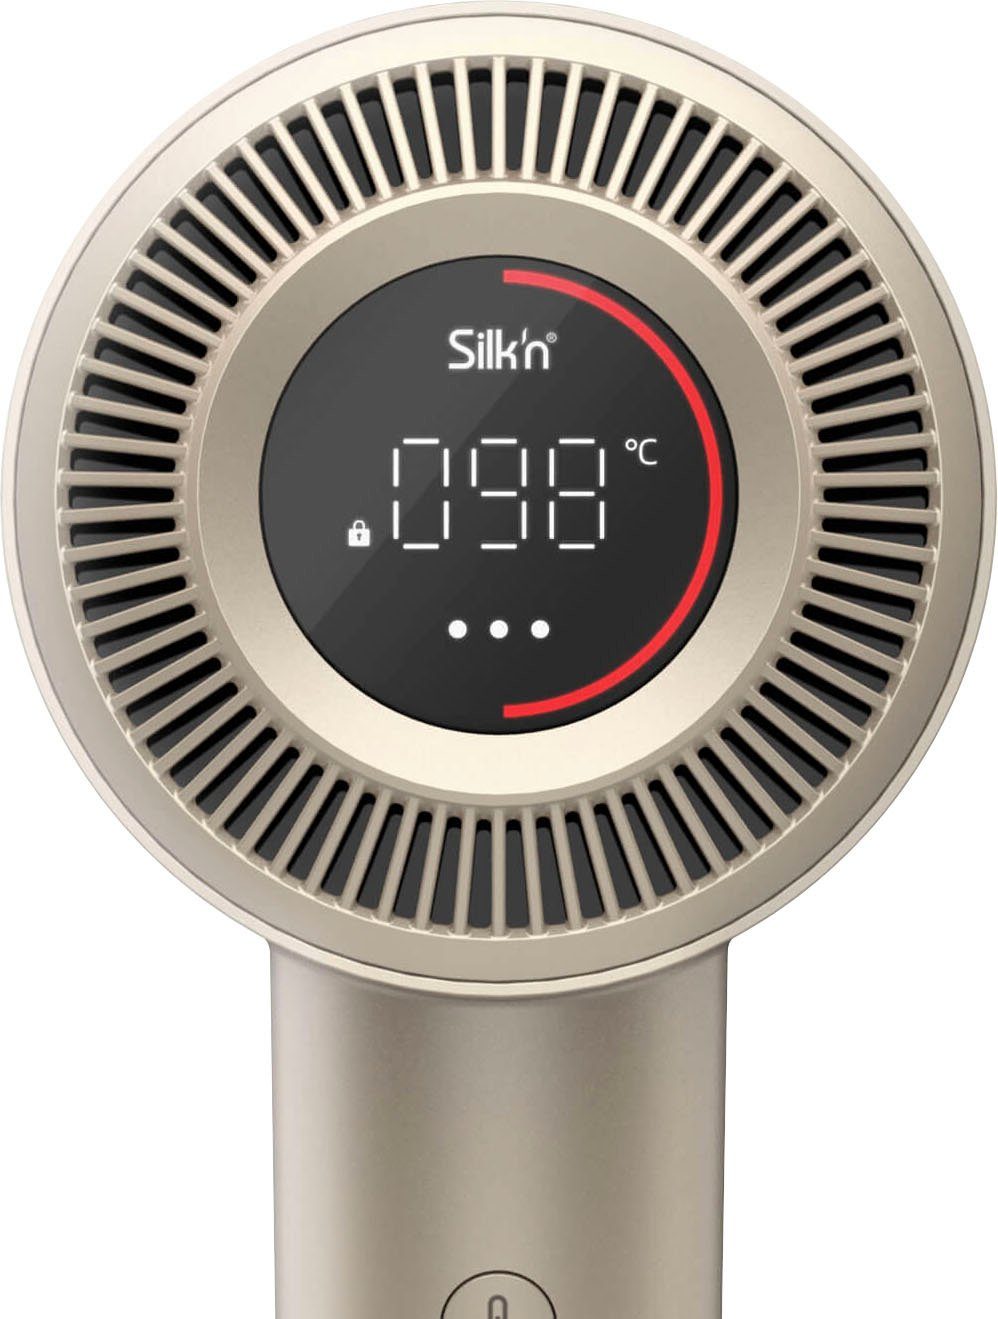 SilkyAir 1600 Ionic-Haartrockner Pro, Silk'n W